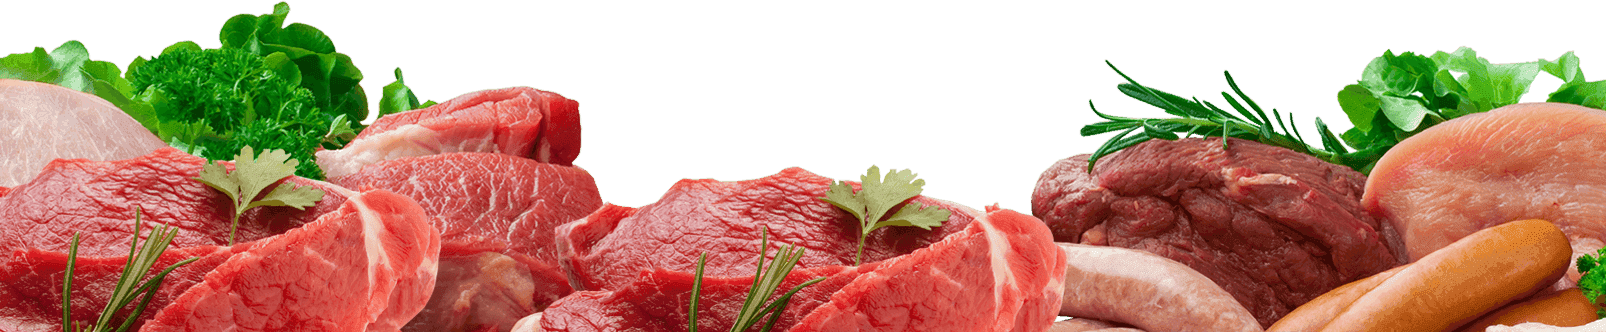 shop clipart meat